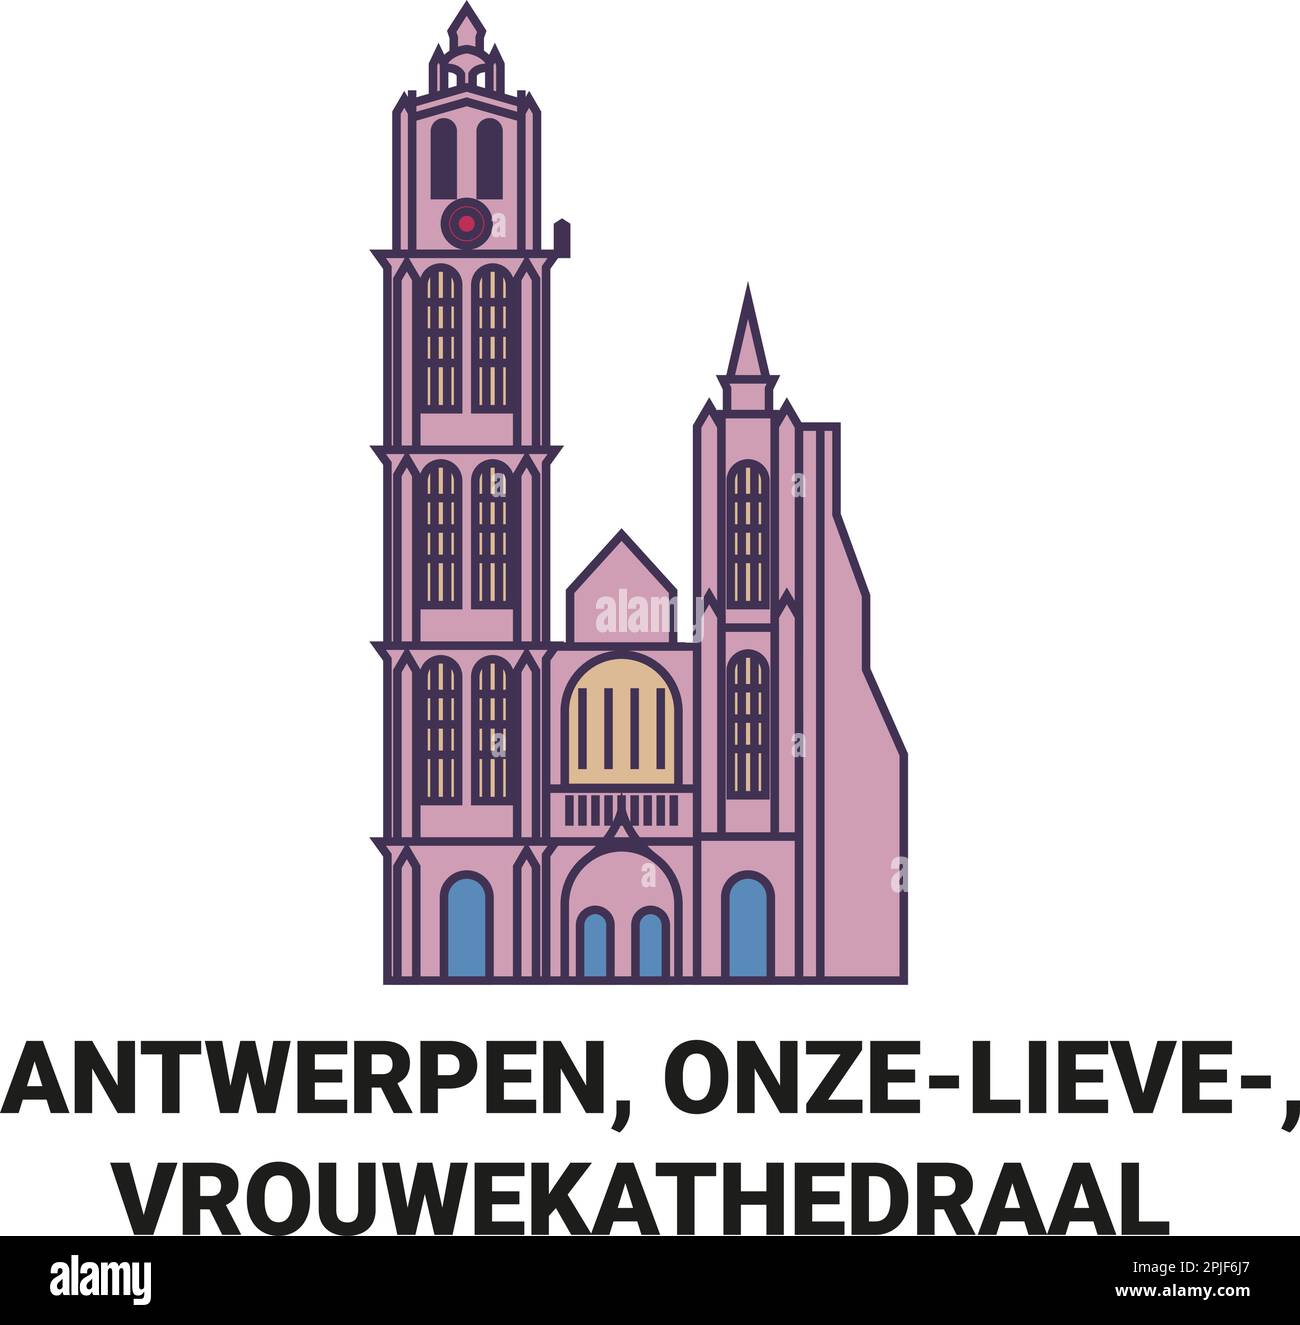 Belgium, Antwerpen, Onzelieve, Vrouwekathedraal travel landmark vector illustration Stock Vector